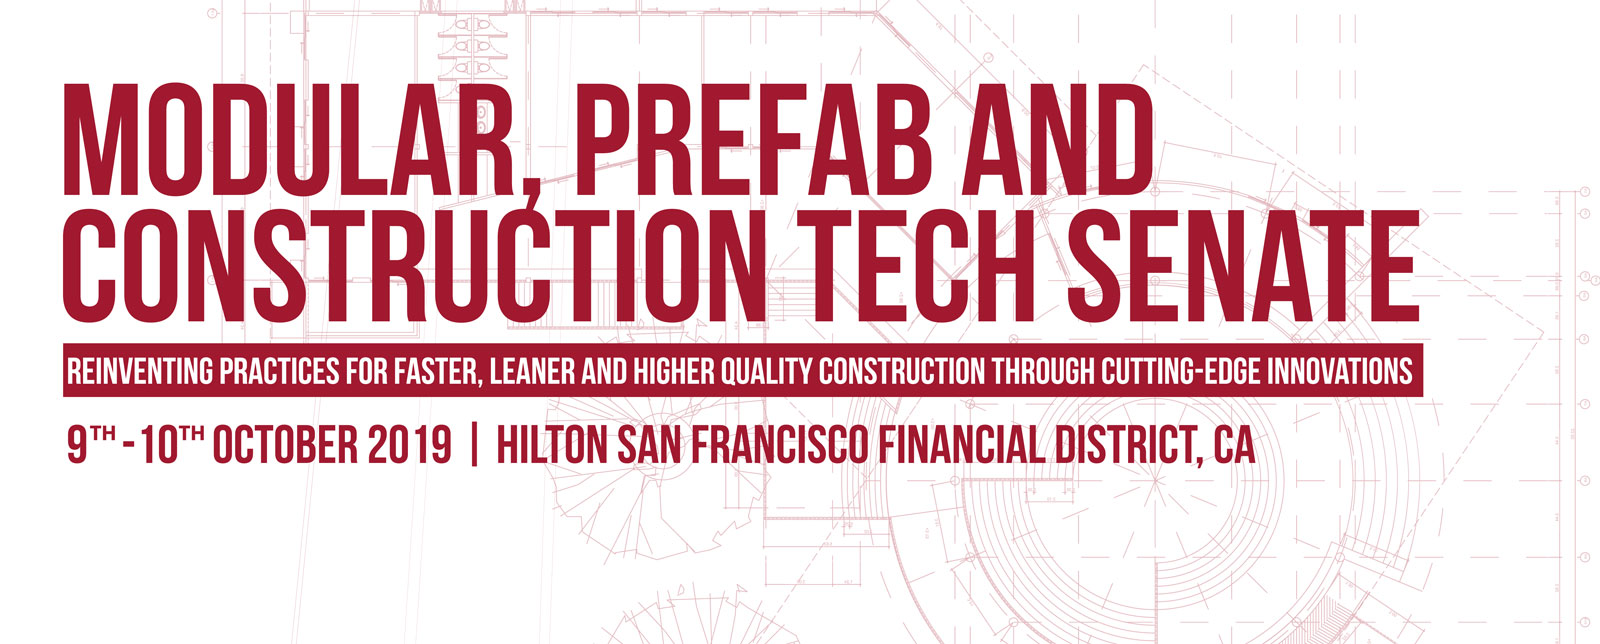 Modular, Prefab and Construction Tech Senate, San Francisco